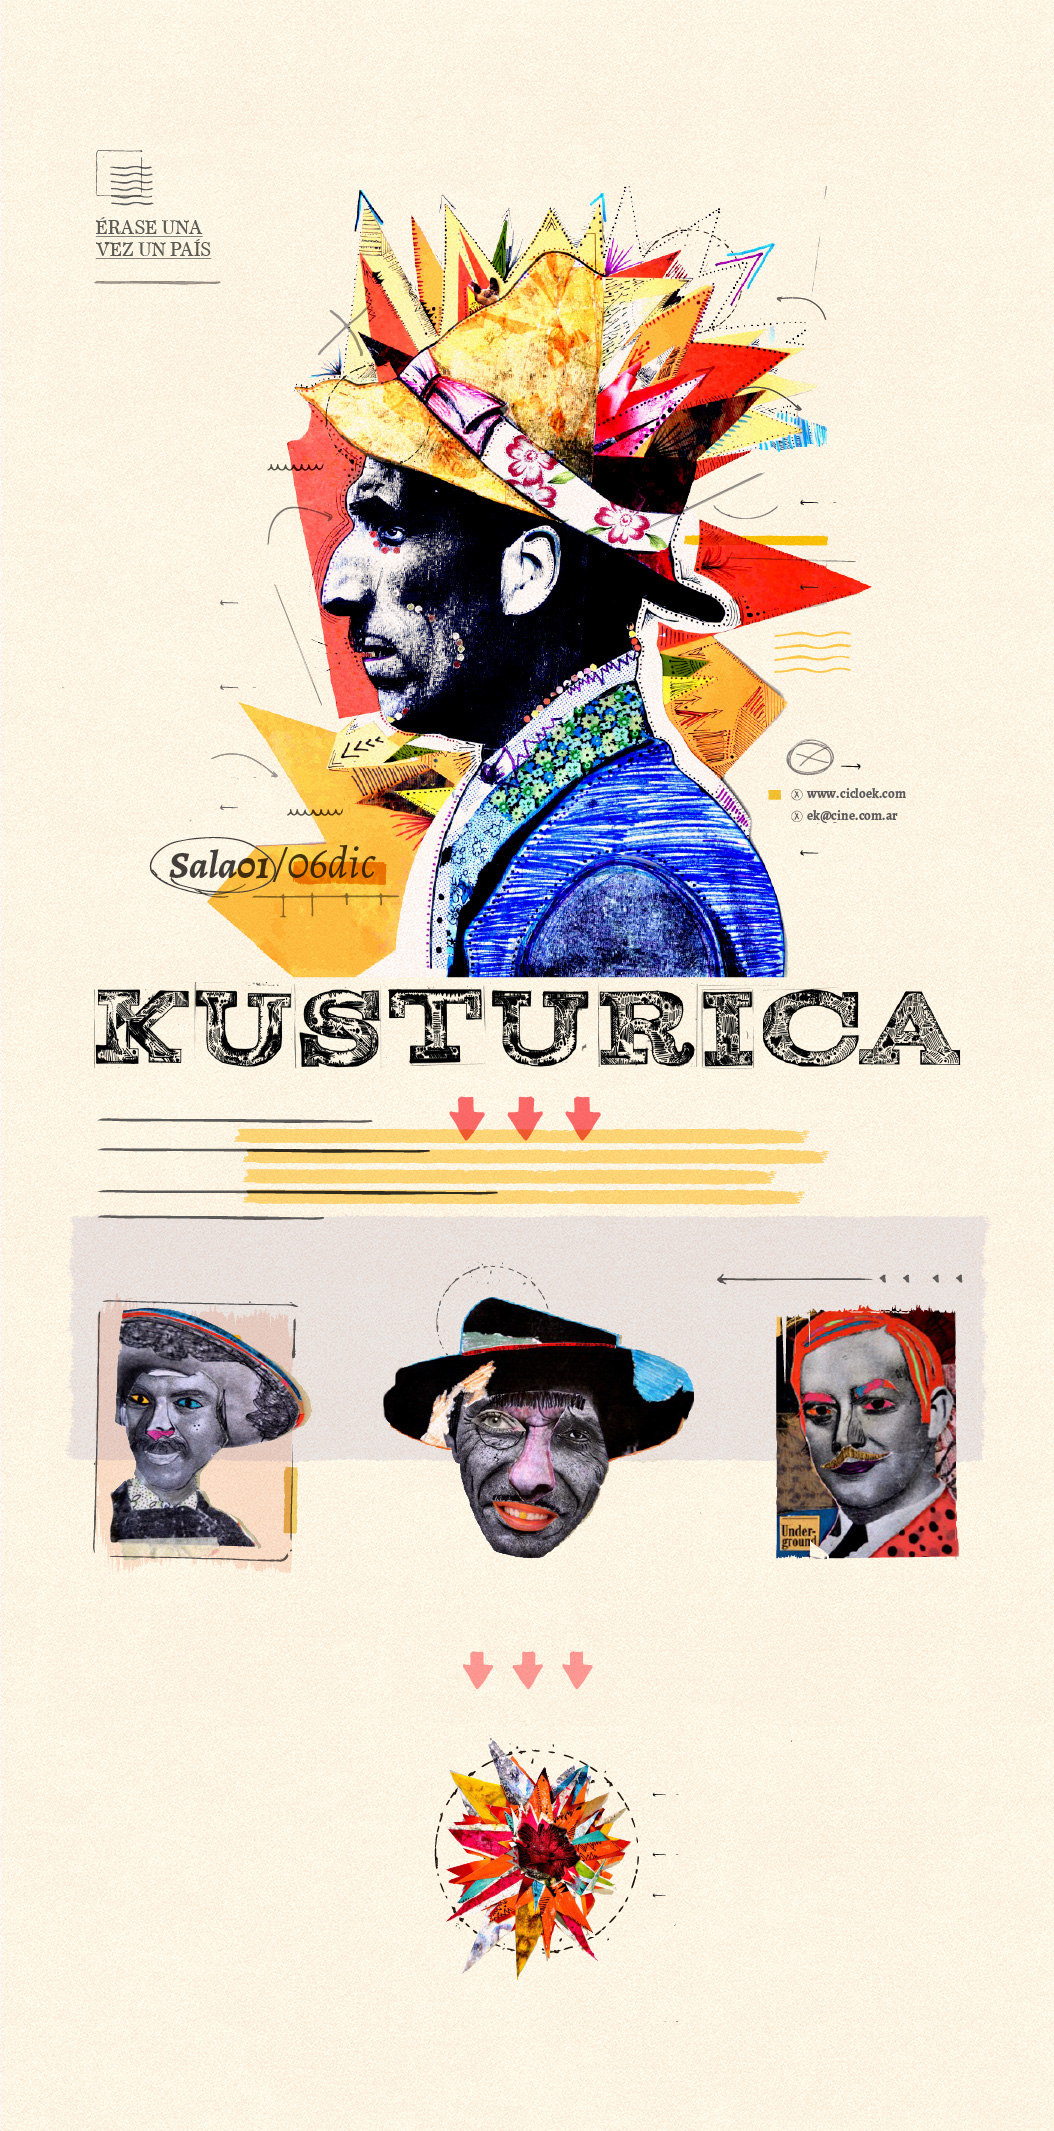 Emir Kusturica collage pelicula cine catedra gabriele ciclo de cine musica balcanica ilustracion